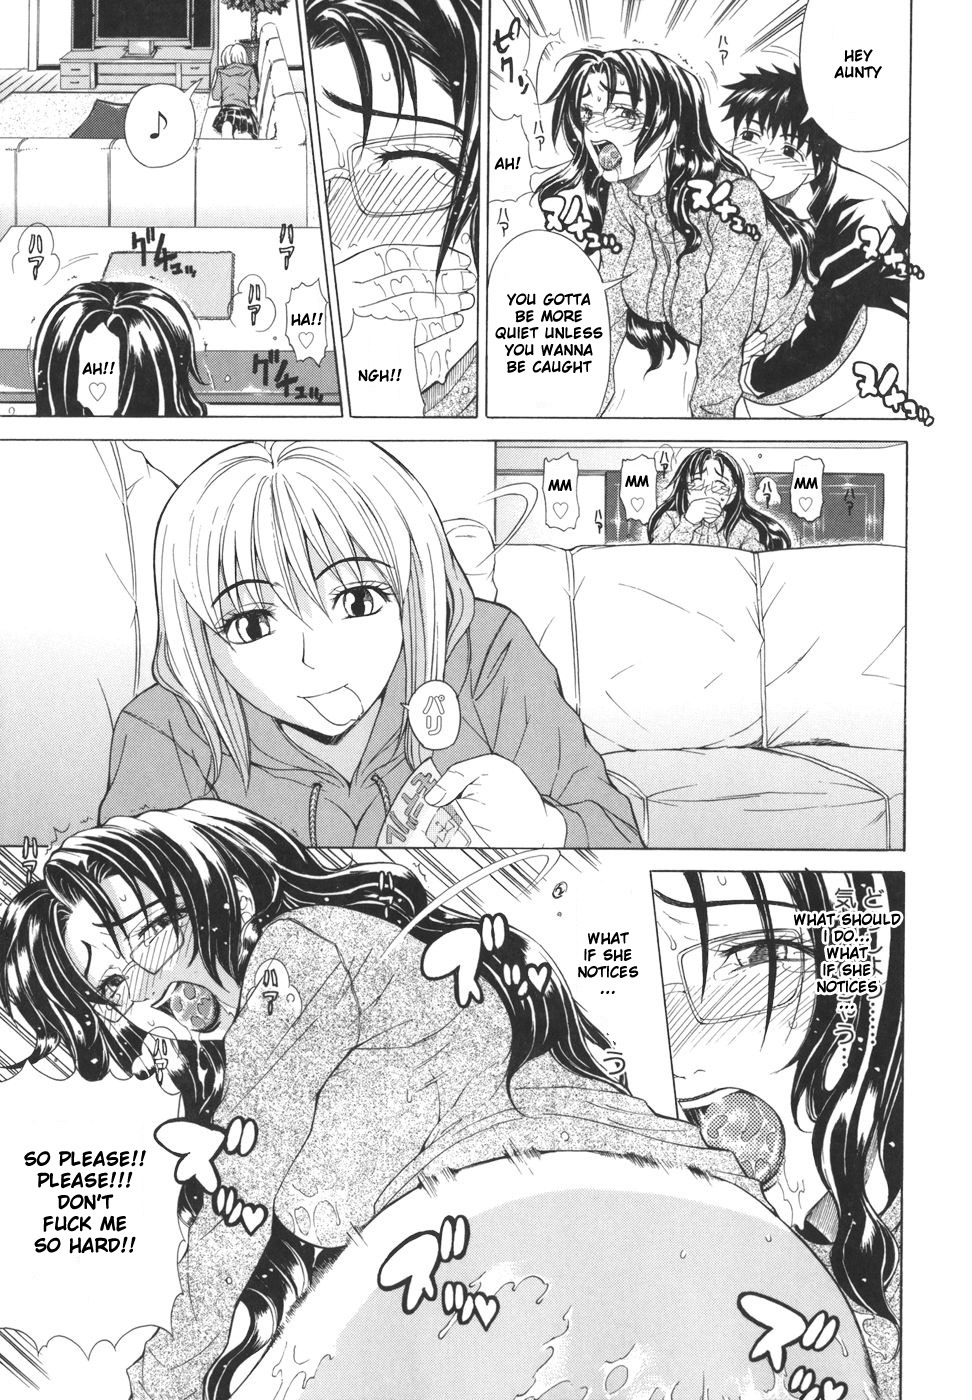 Pearl Rose 22 hentai manga